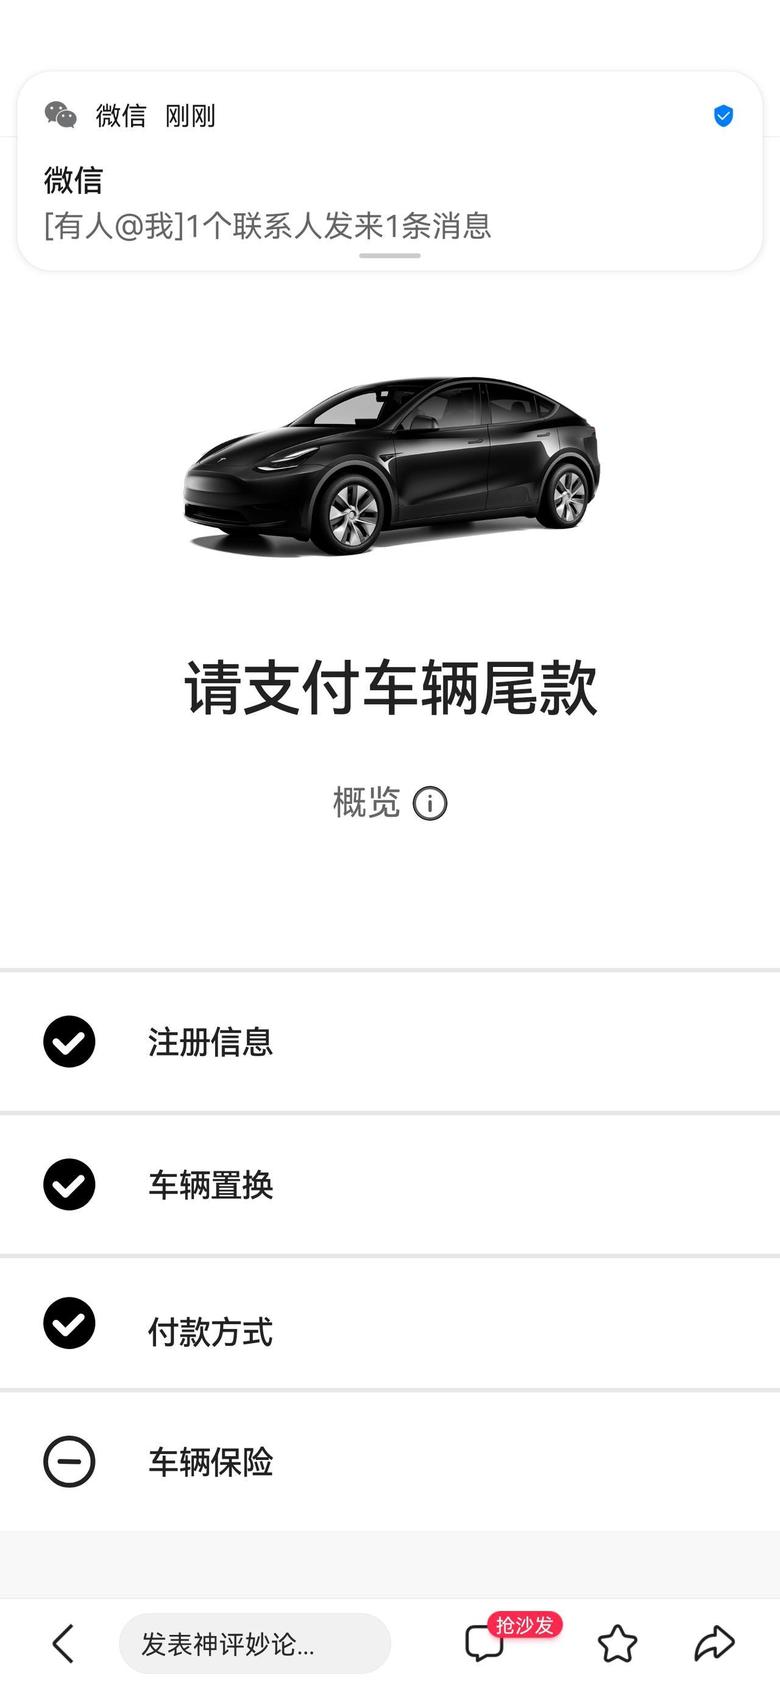 model y 等待65天变了突如其来的距离上海近两天内交付，不知道买啥配件随车充建议买什么牌子的啊多少kw的，停车位已经有家充了。